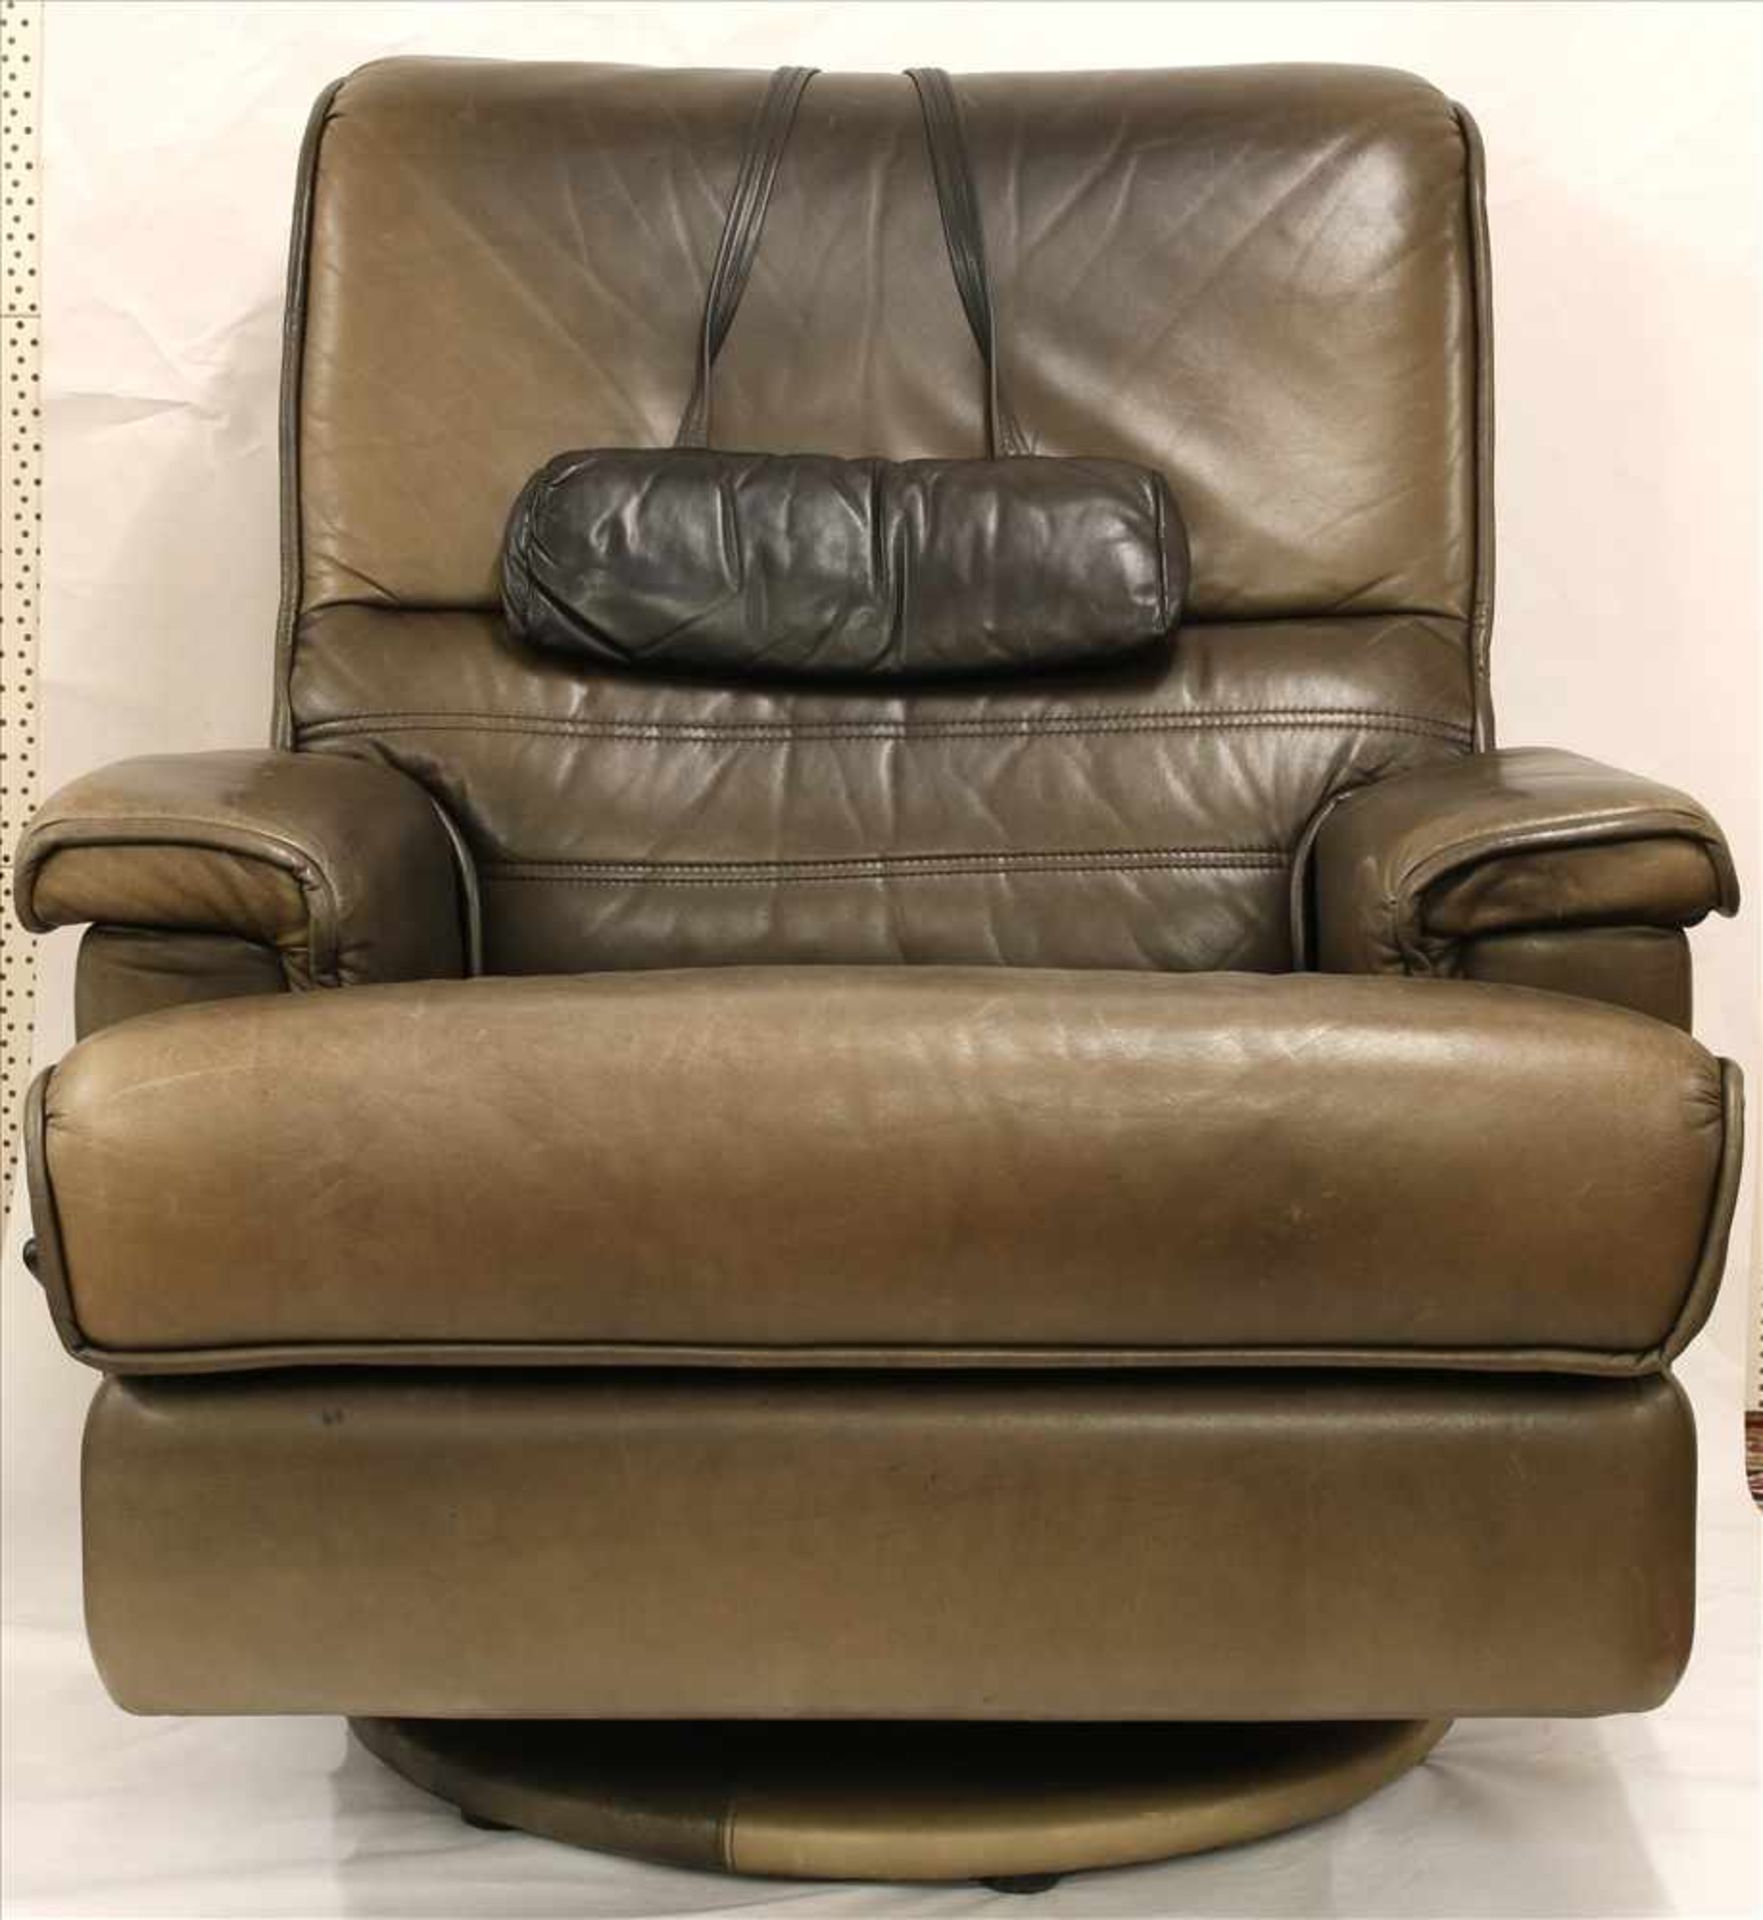 Design Sessel1970er Jahre. Ledersessel mit Relaxfunktion. Größe ca. 90 x 90 cm, Höhe ca. 100 cm.